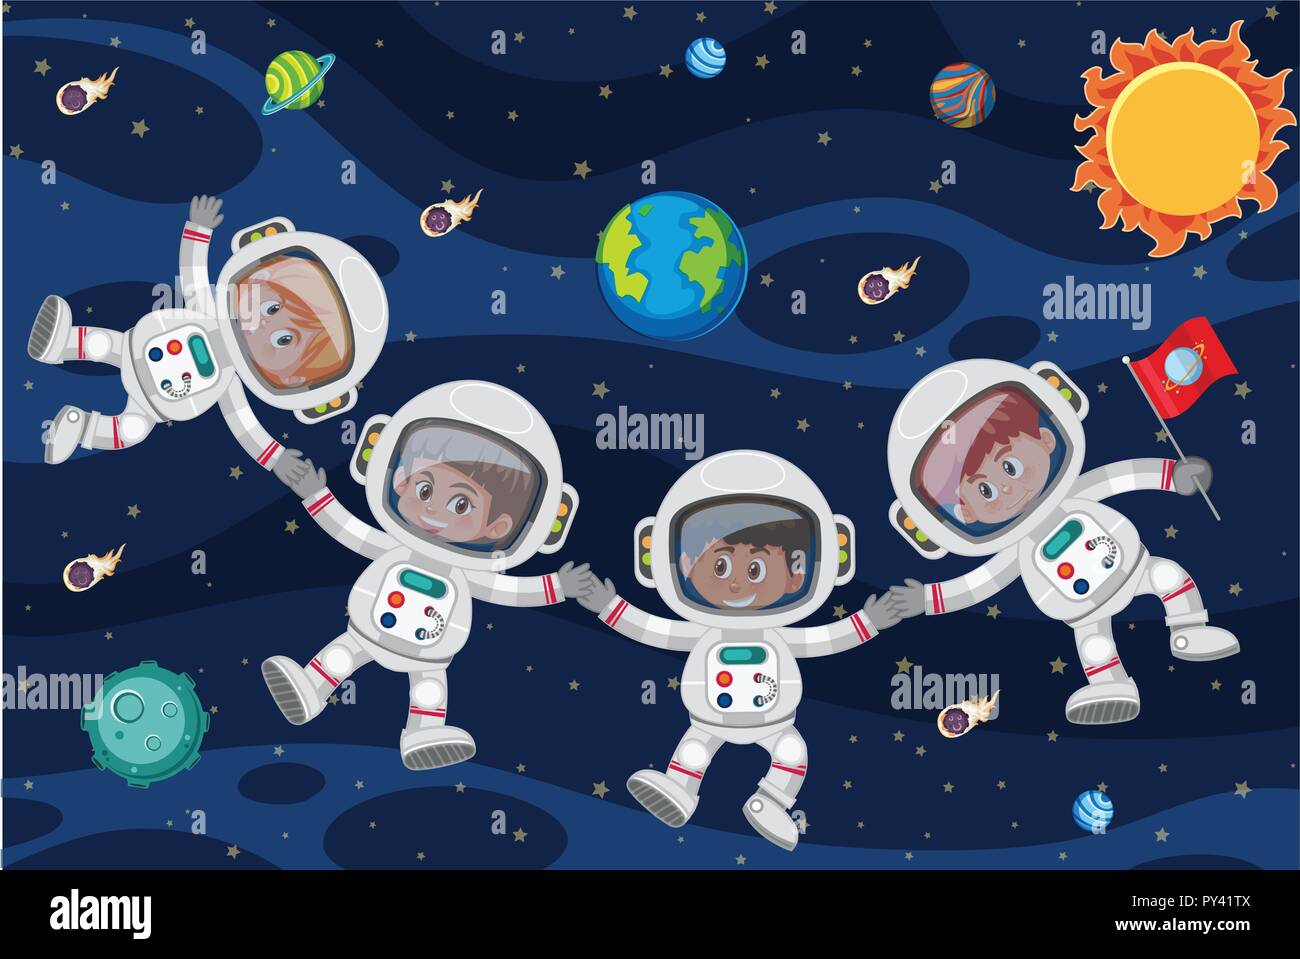 Картинки о космосе и космонавтах для детей дошкольного возраста